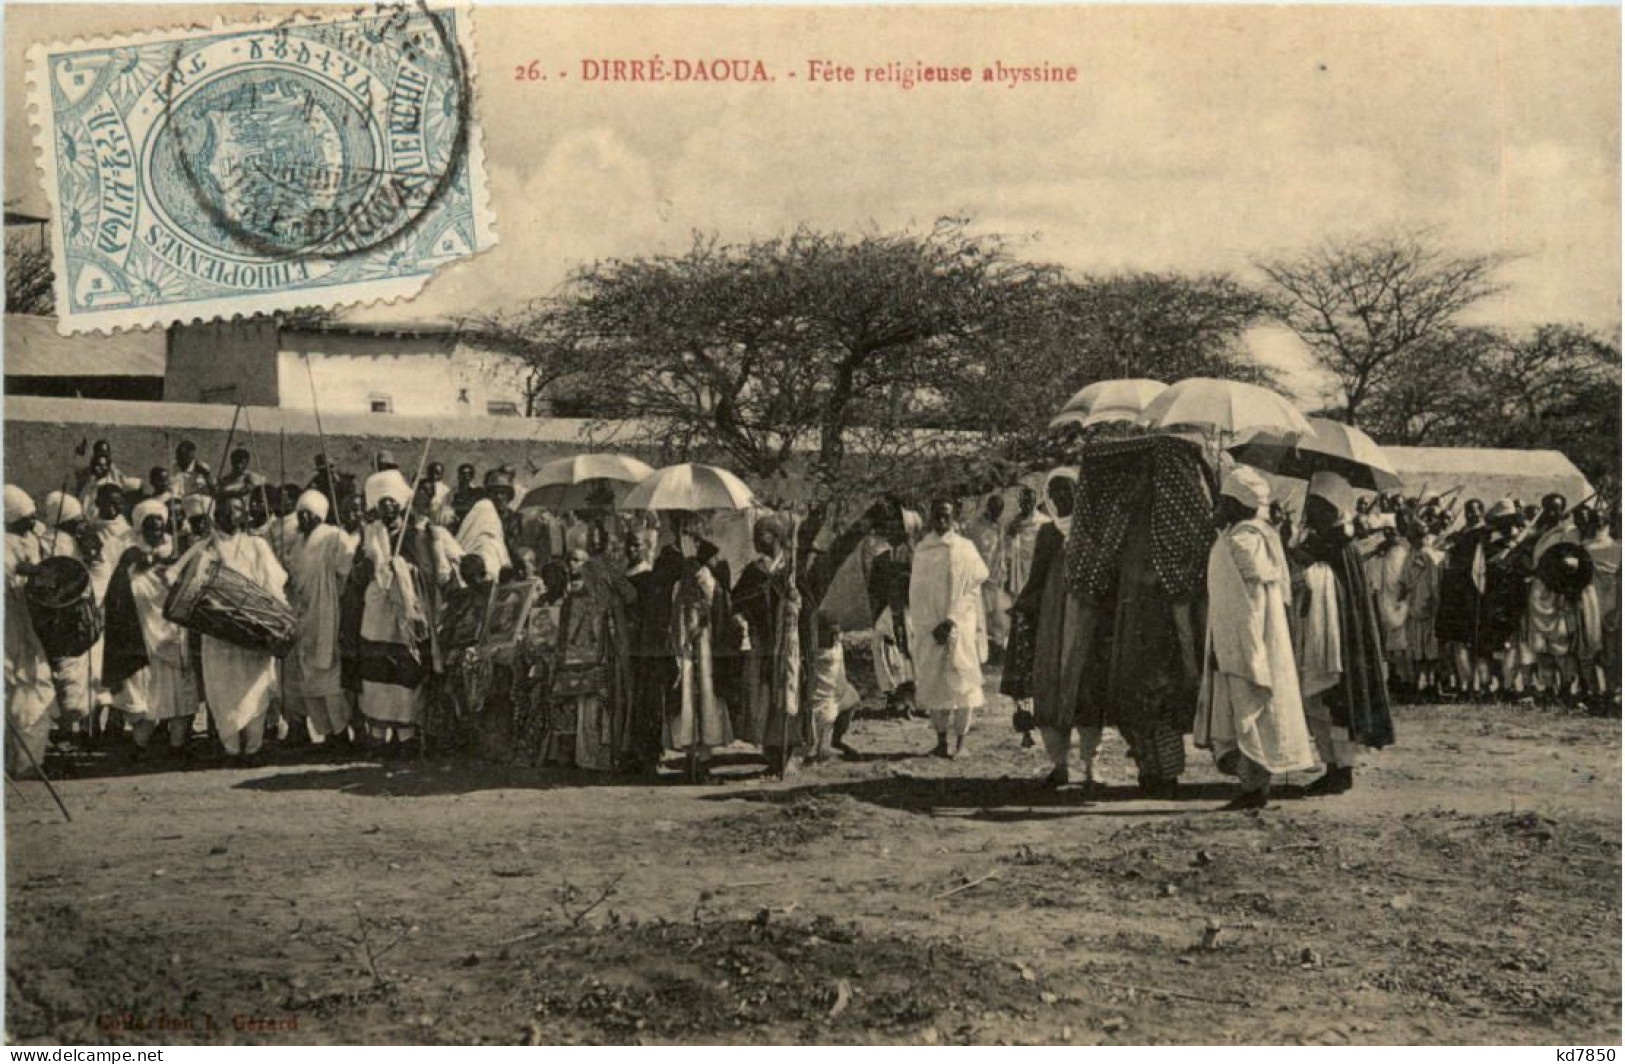 Ethiopie - Dirre-Daoua - Äthiopien